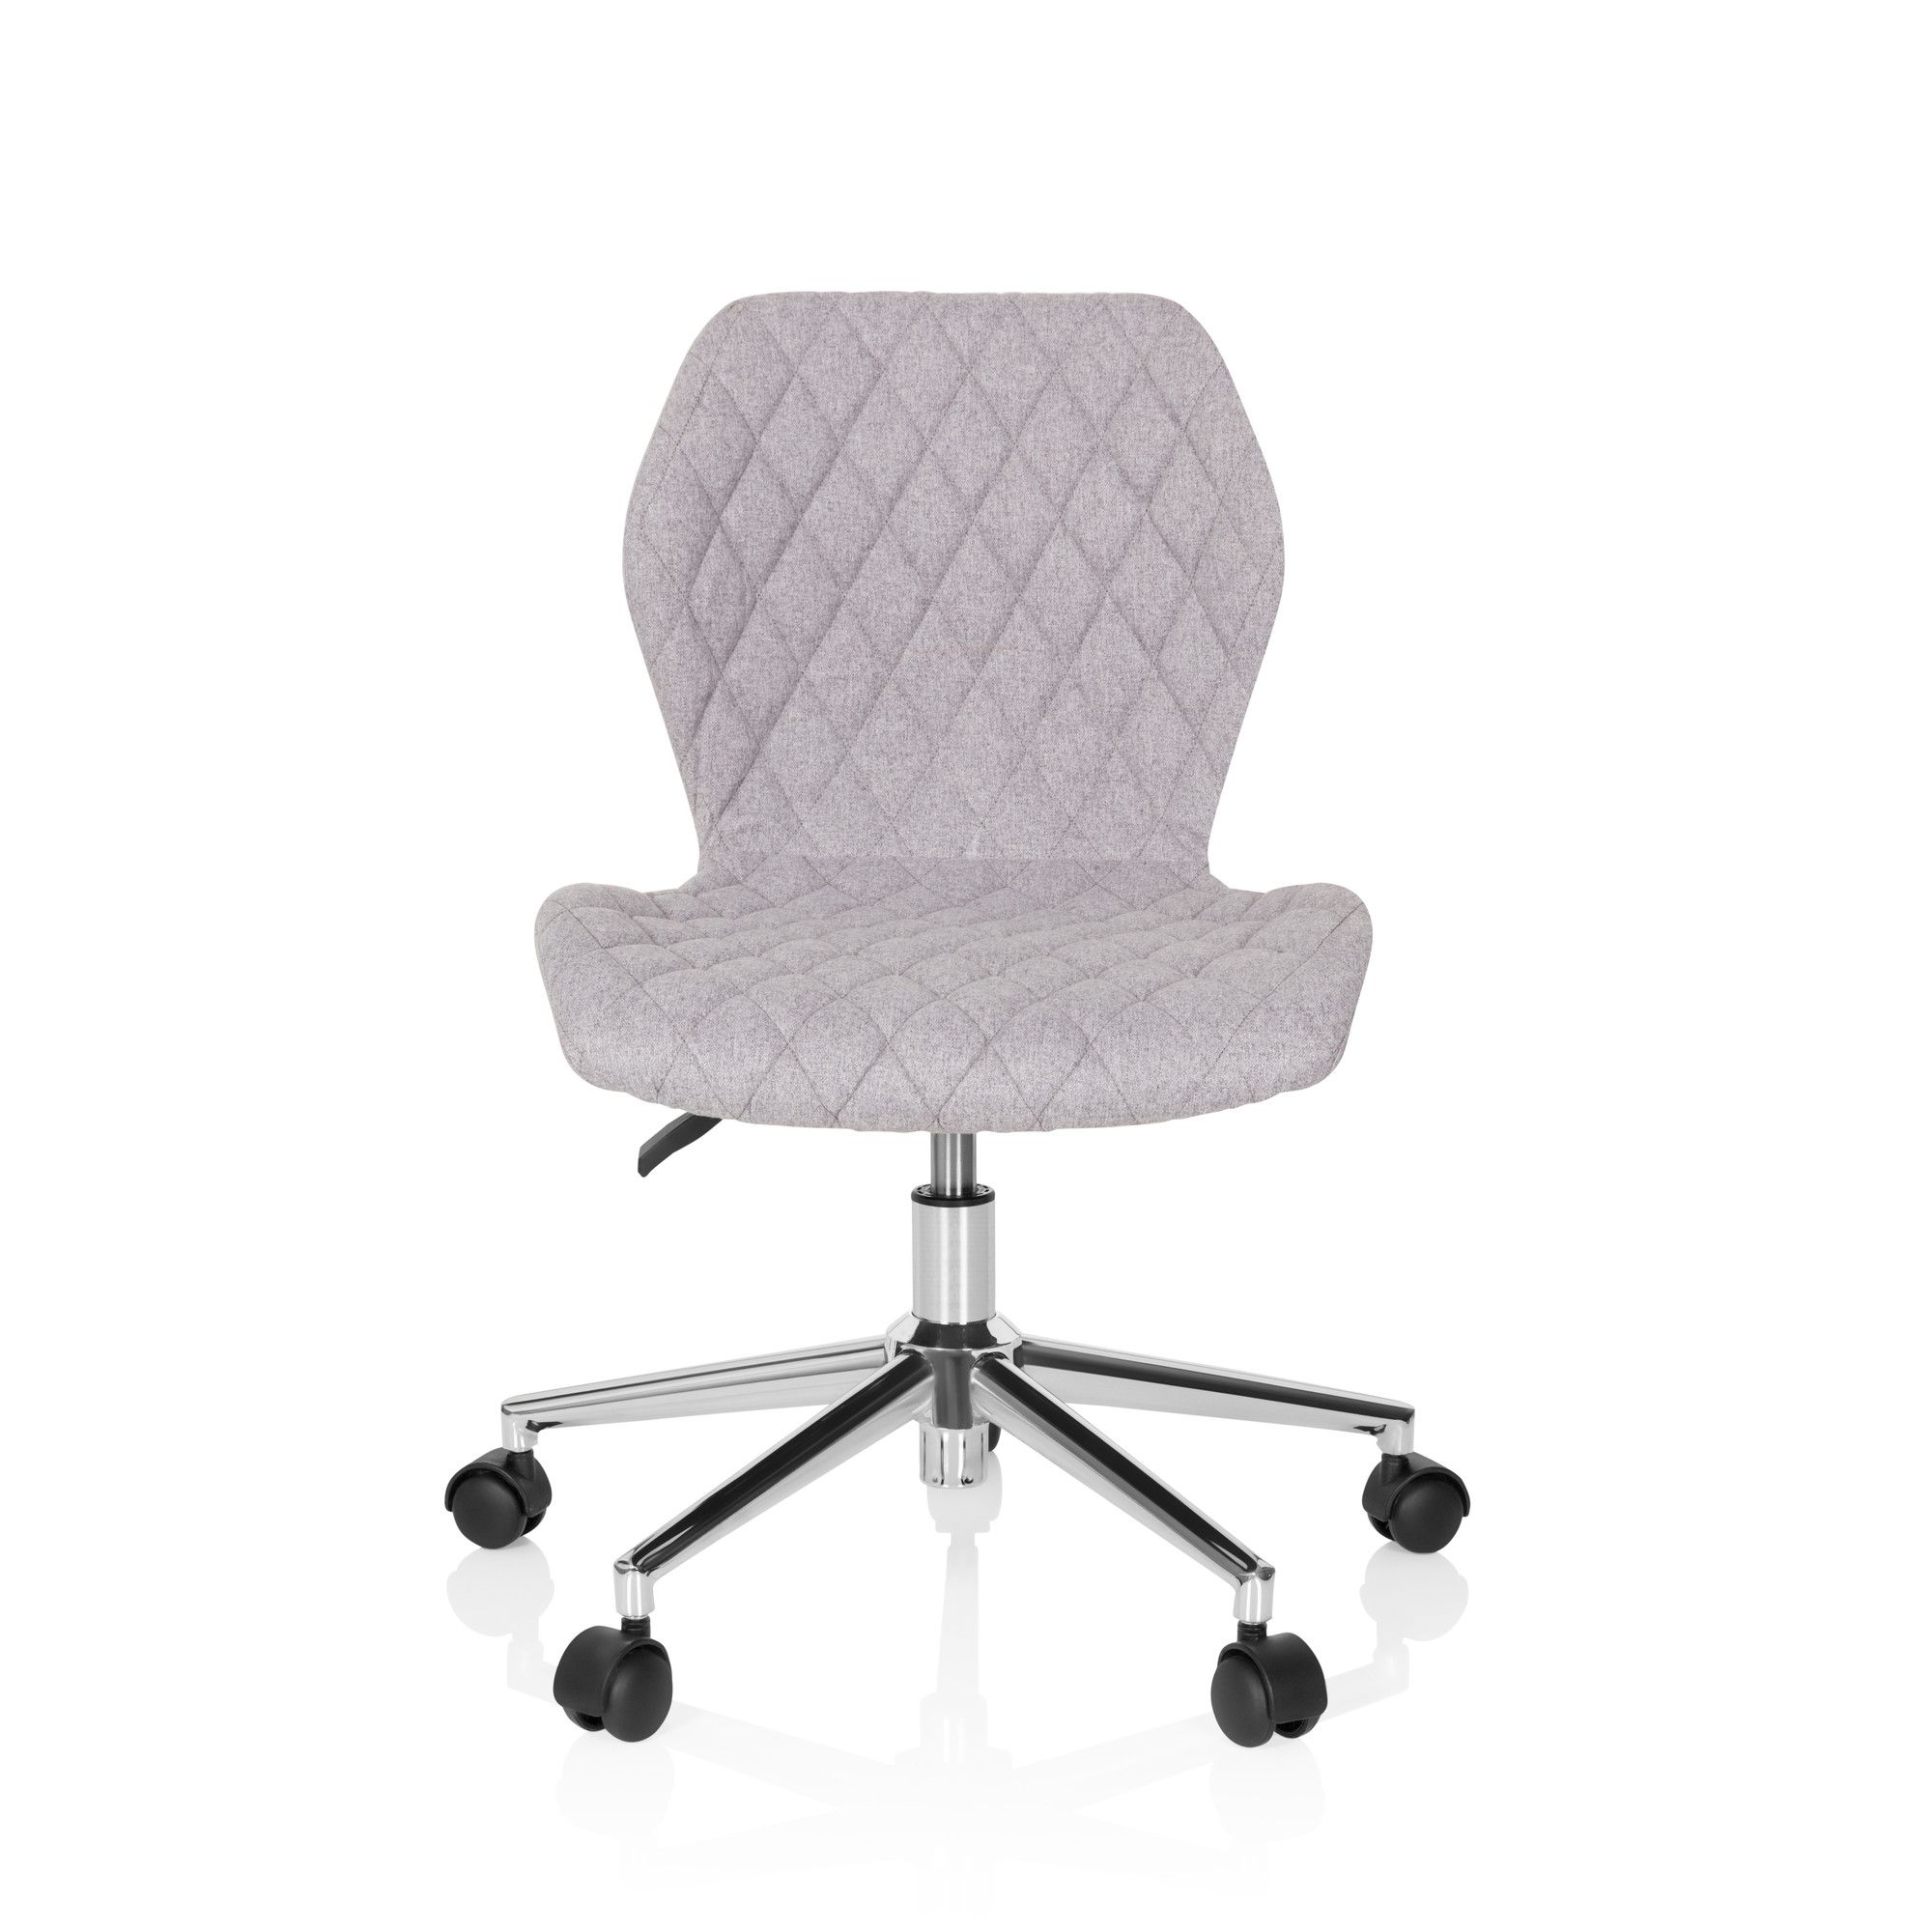 chaise de bureau / chaise d'enfant pour enfants joy ii tissu gris clair hjh office